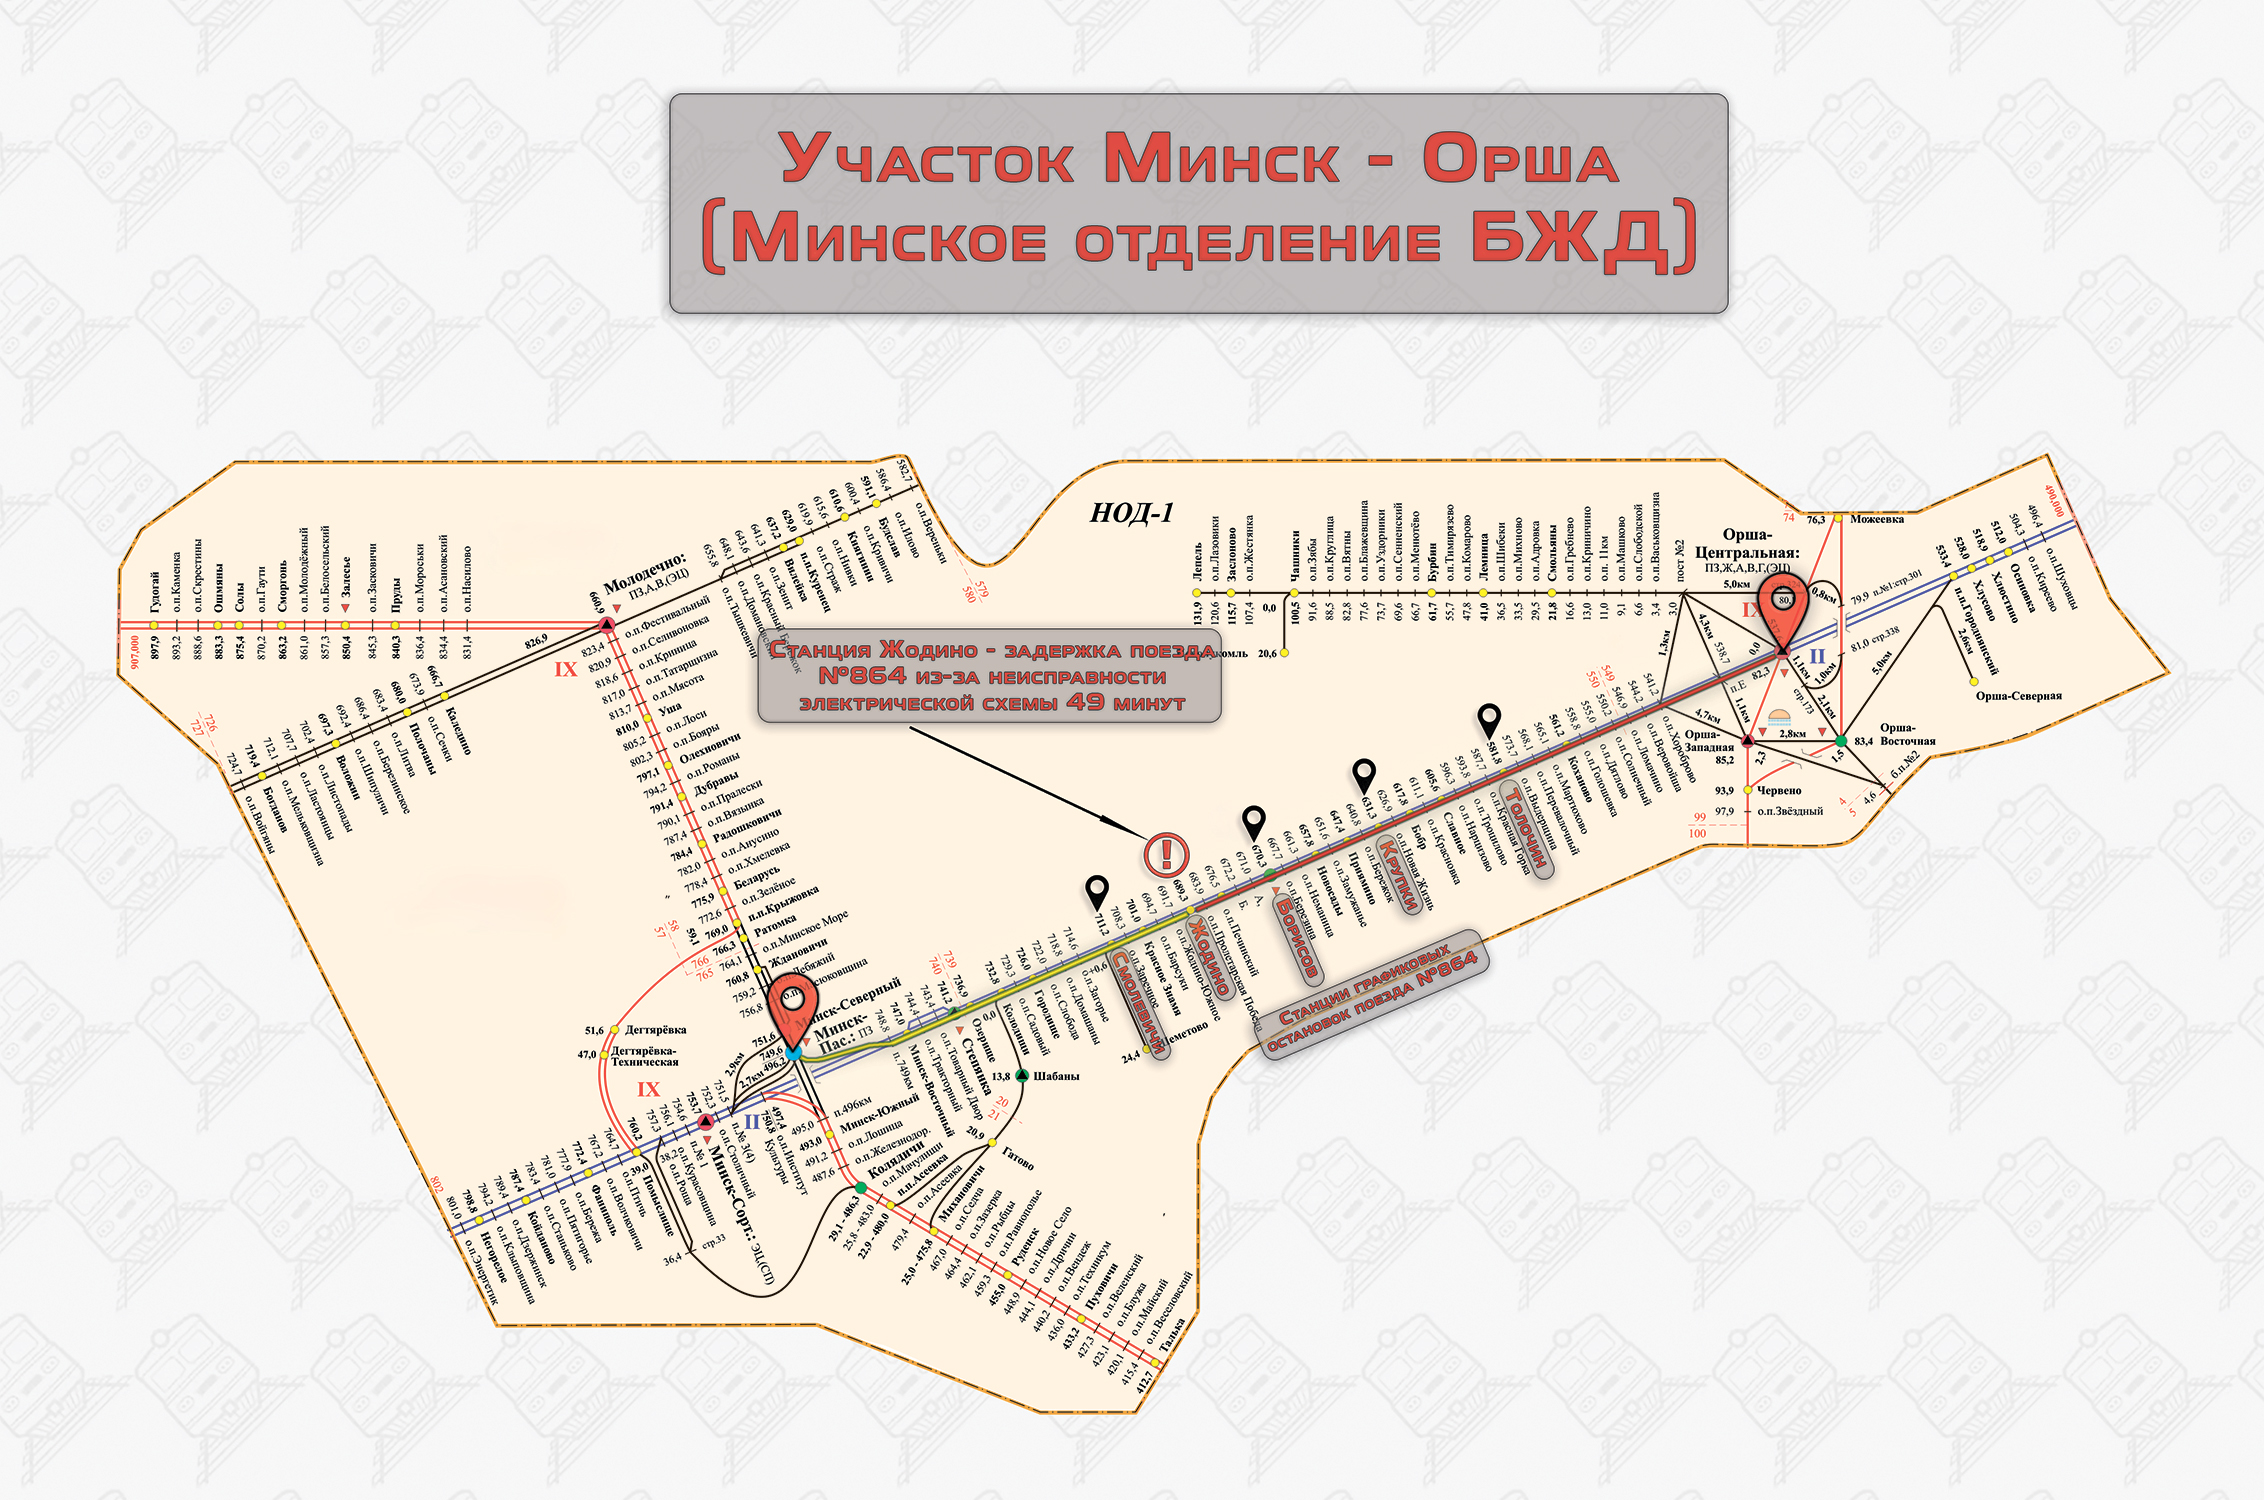 Схема участка Минск - Орша, на котором допущена задержка поезда №864